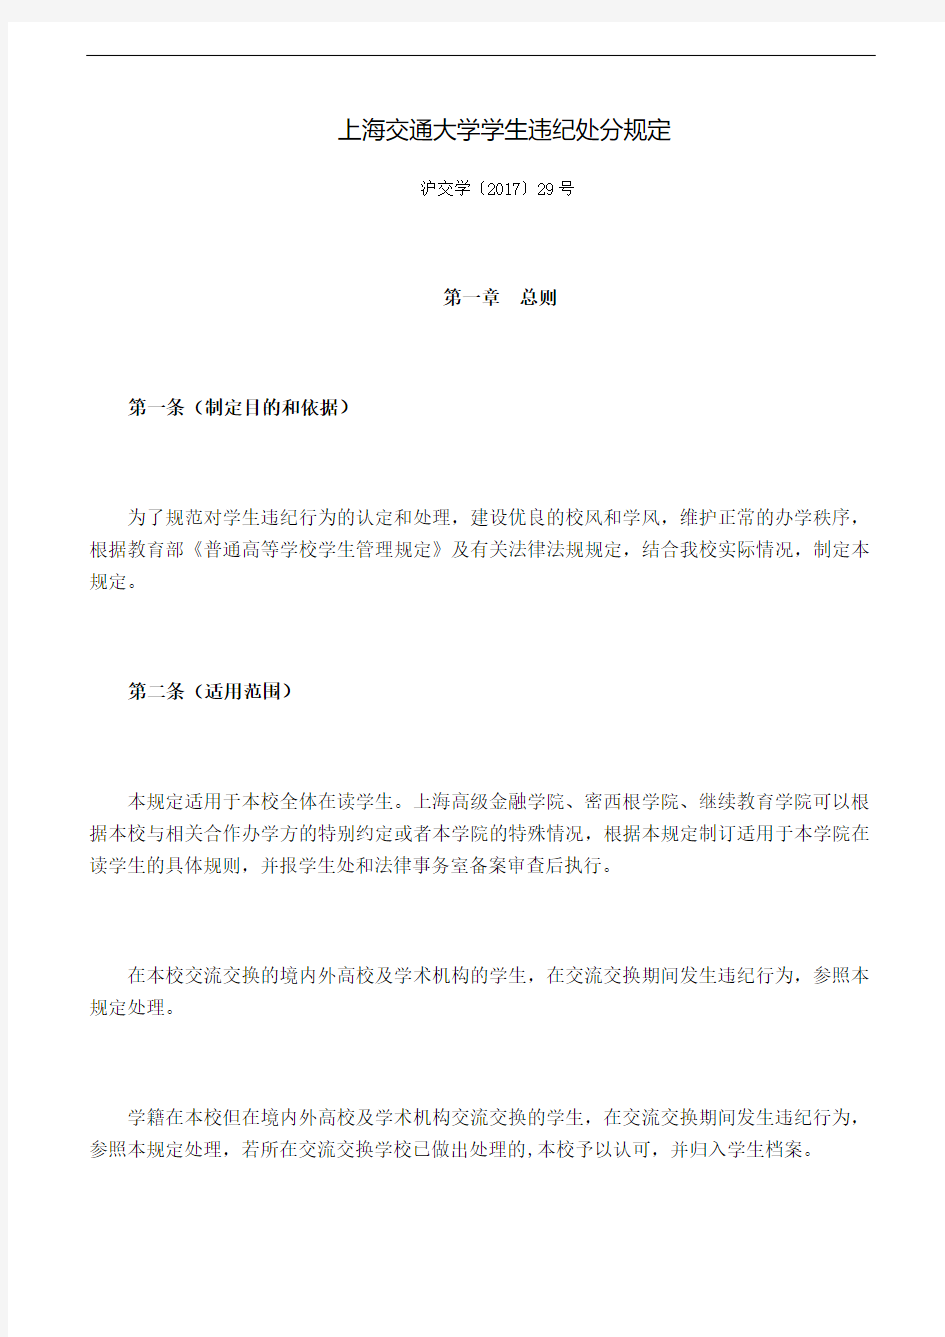 上海交通大学学生违纪处分规定